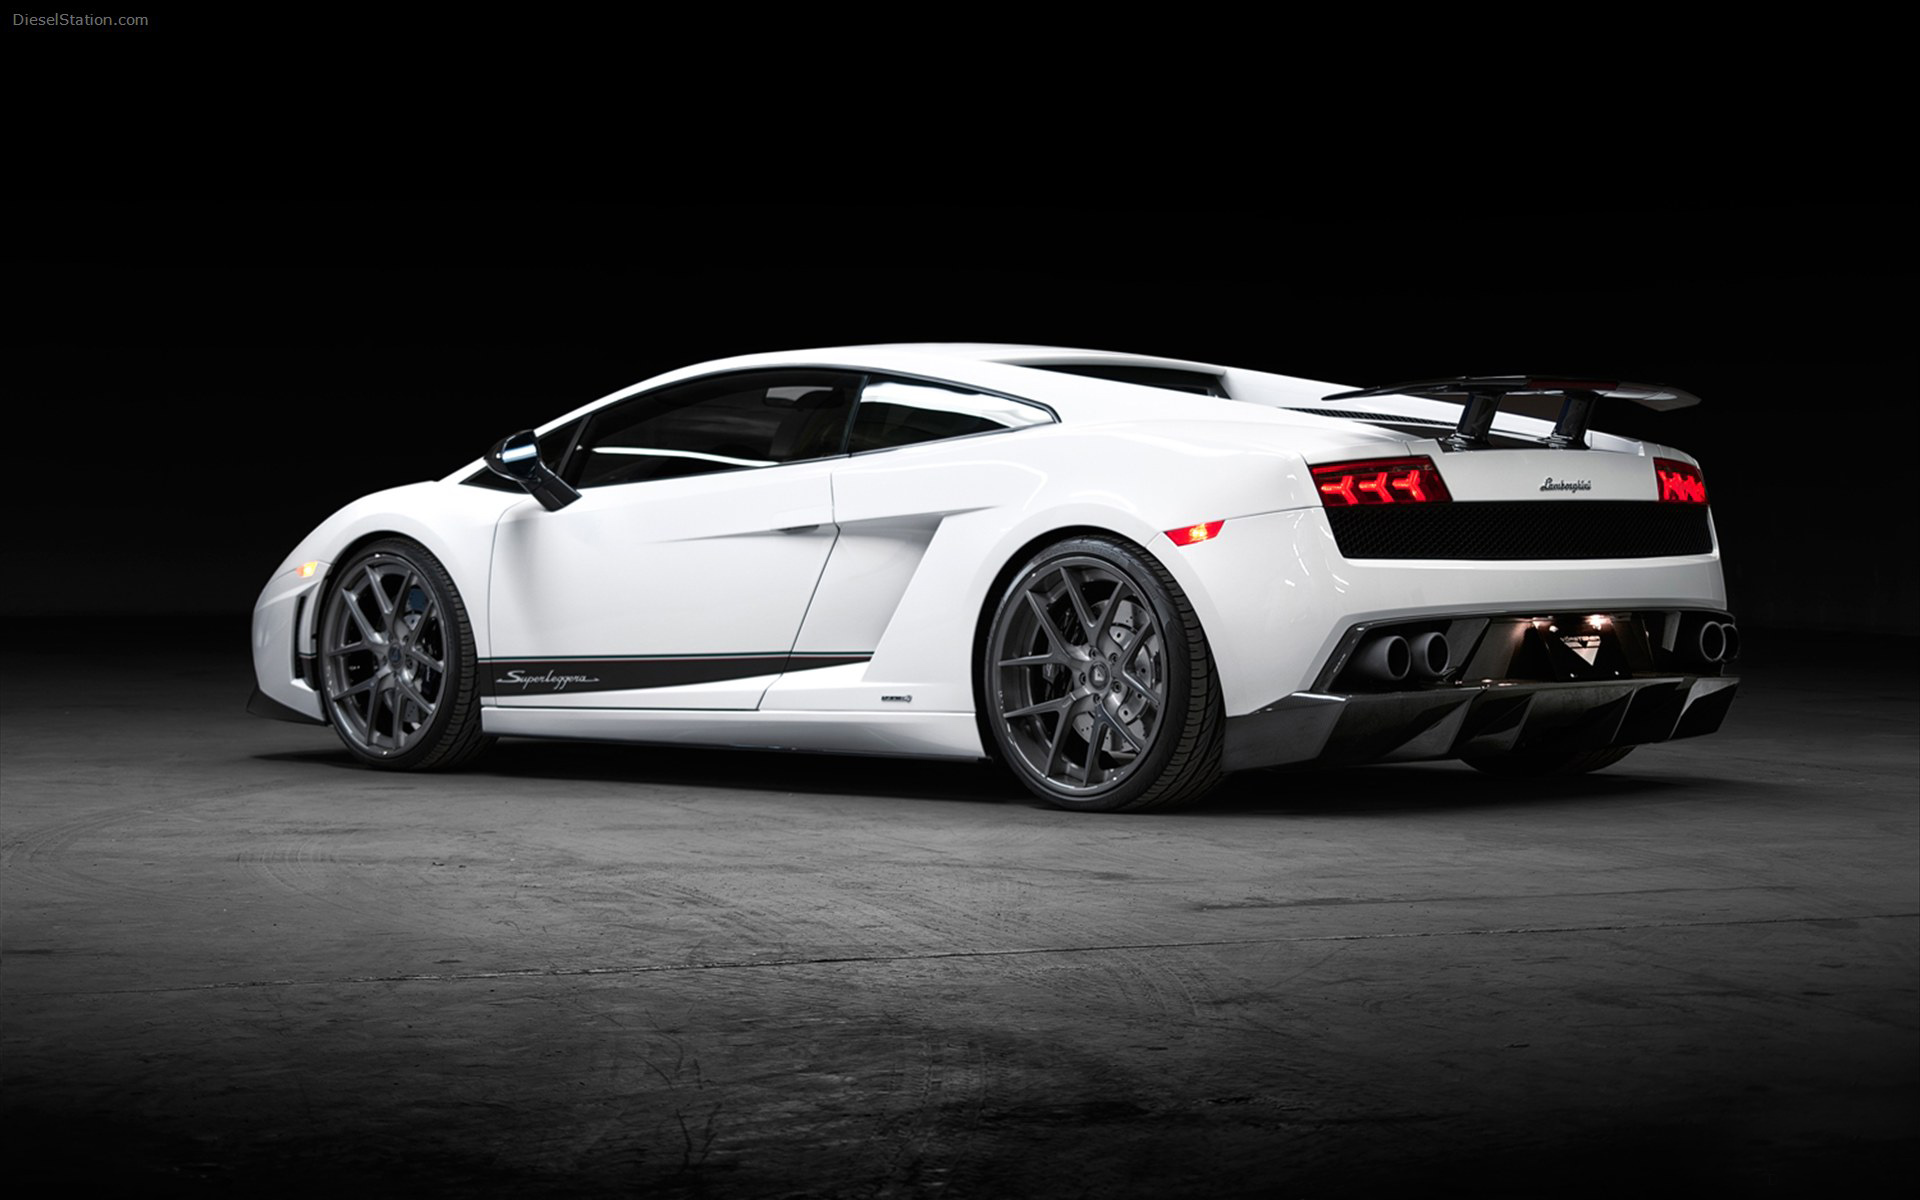 Lamborghini Gallardo 2012 White - HD Wallpaper 